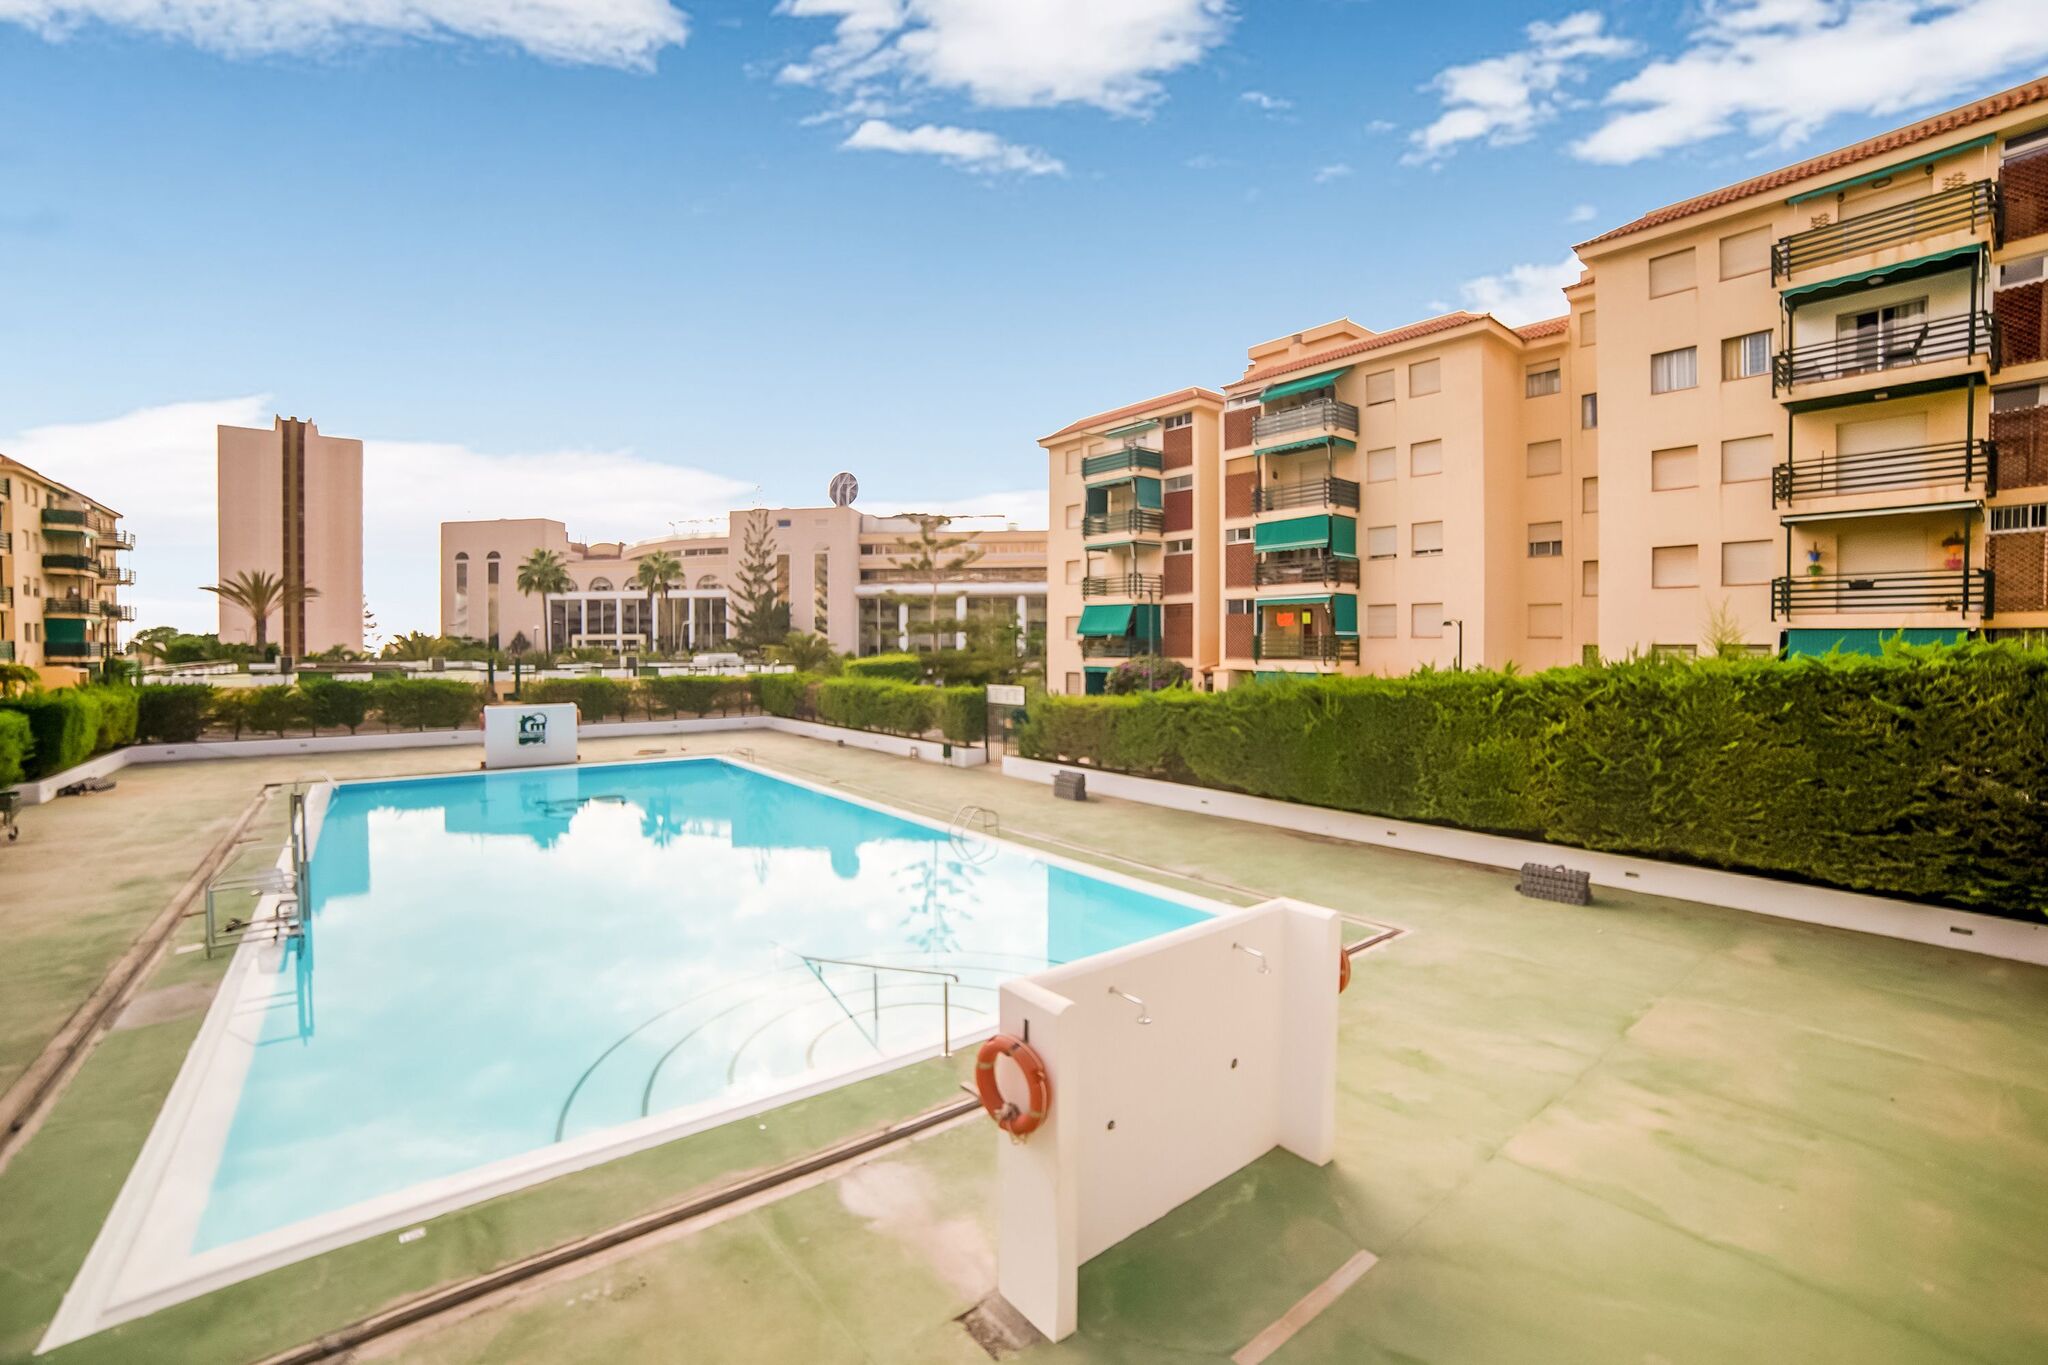 Uitmuntend appartement in Los Cristianos met een zwembad